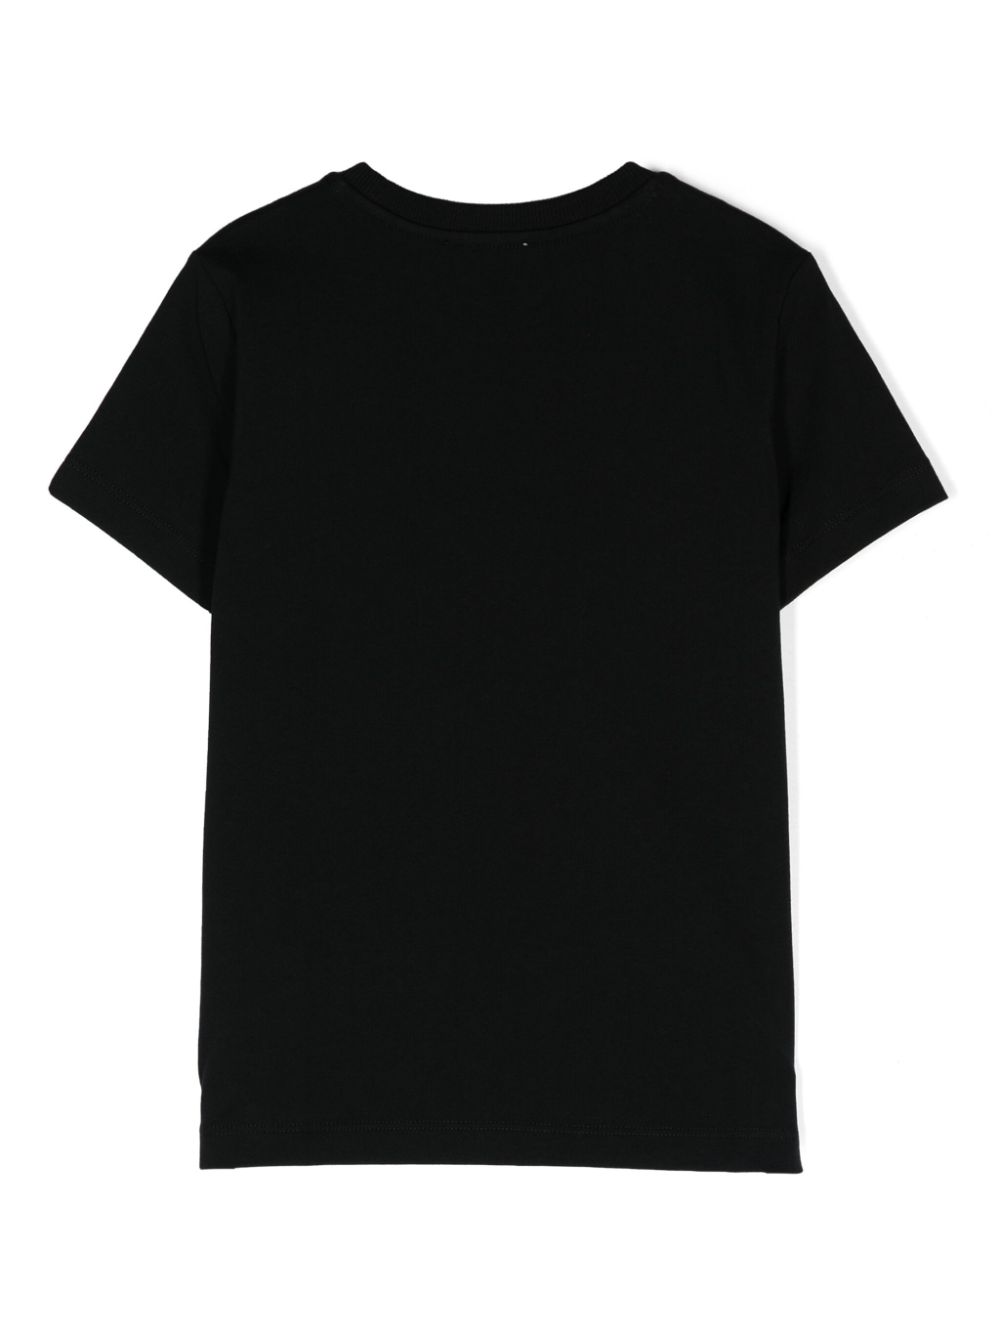 Unisex black cotton t-shirt